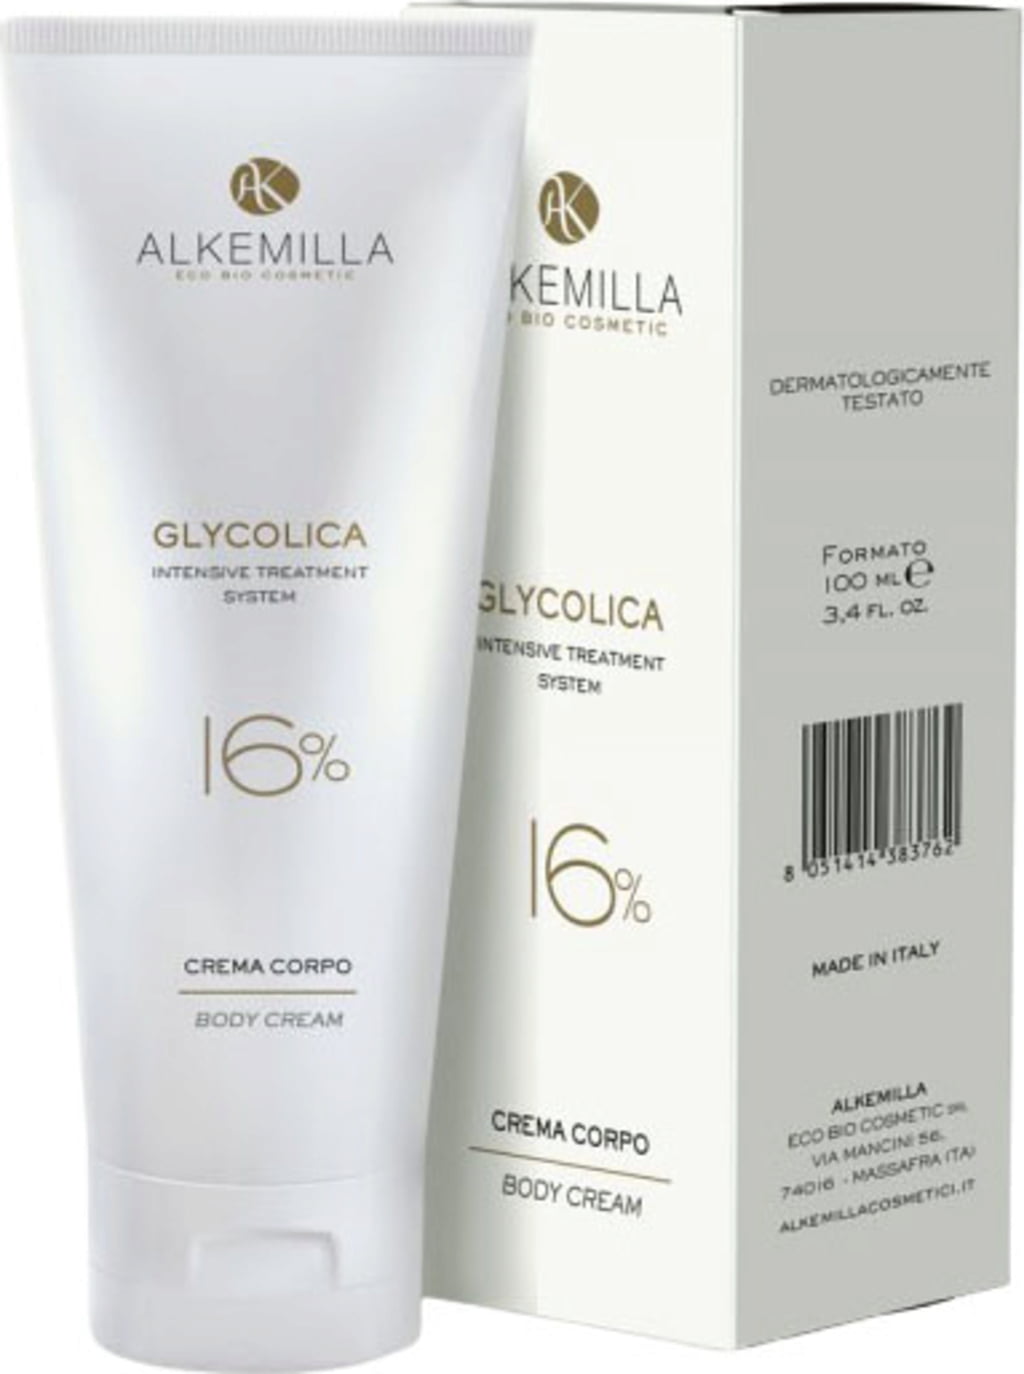 Alkemilla Eco Bio Cosmetic Crème Corporelle 16% Glycolica - 100 ml